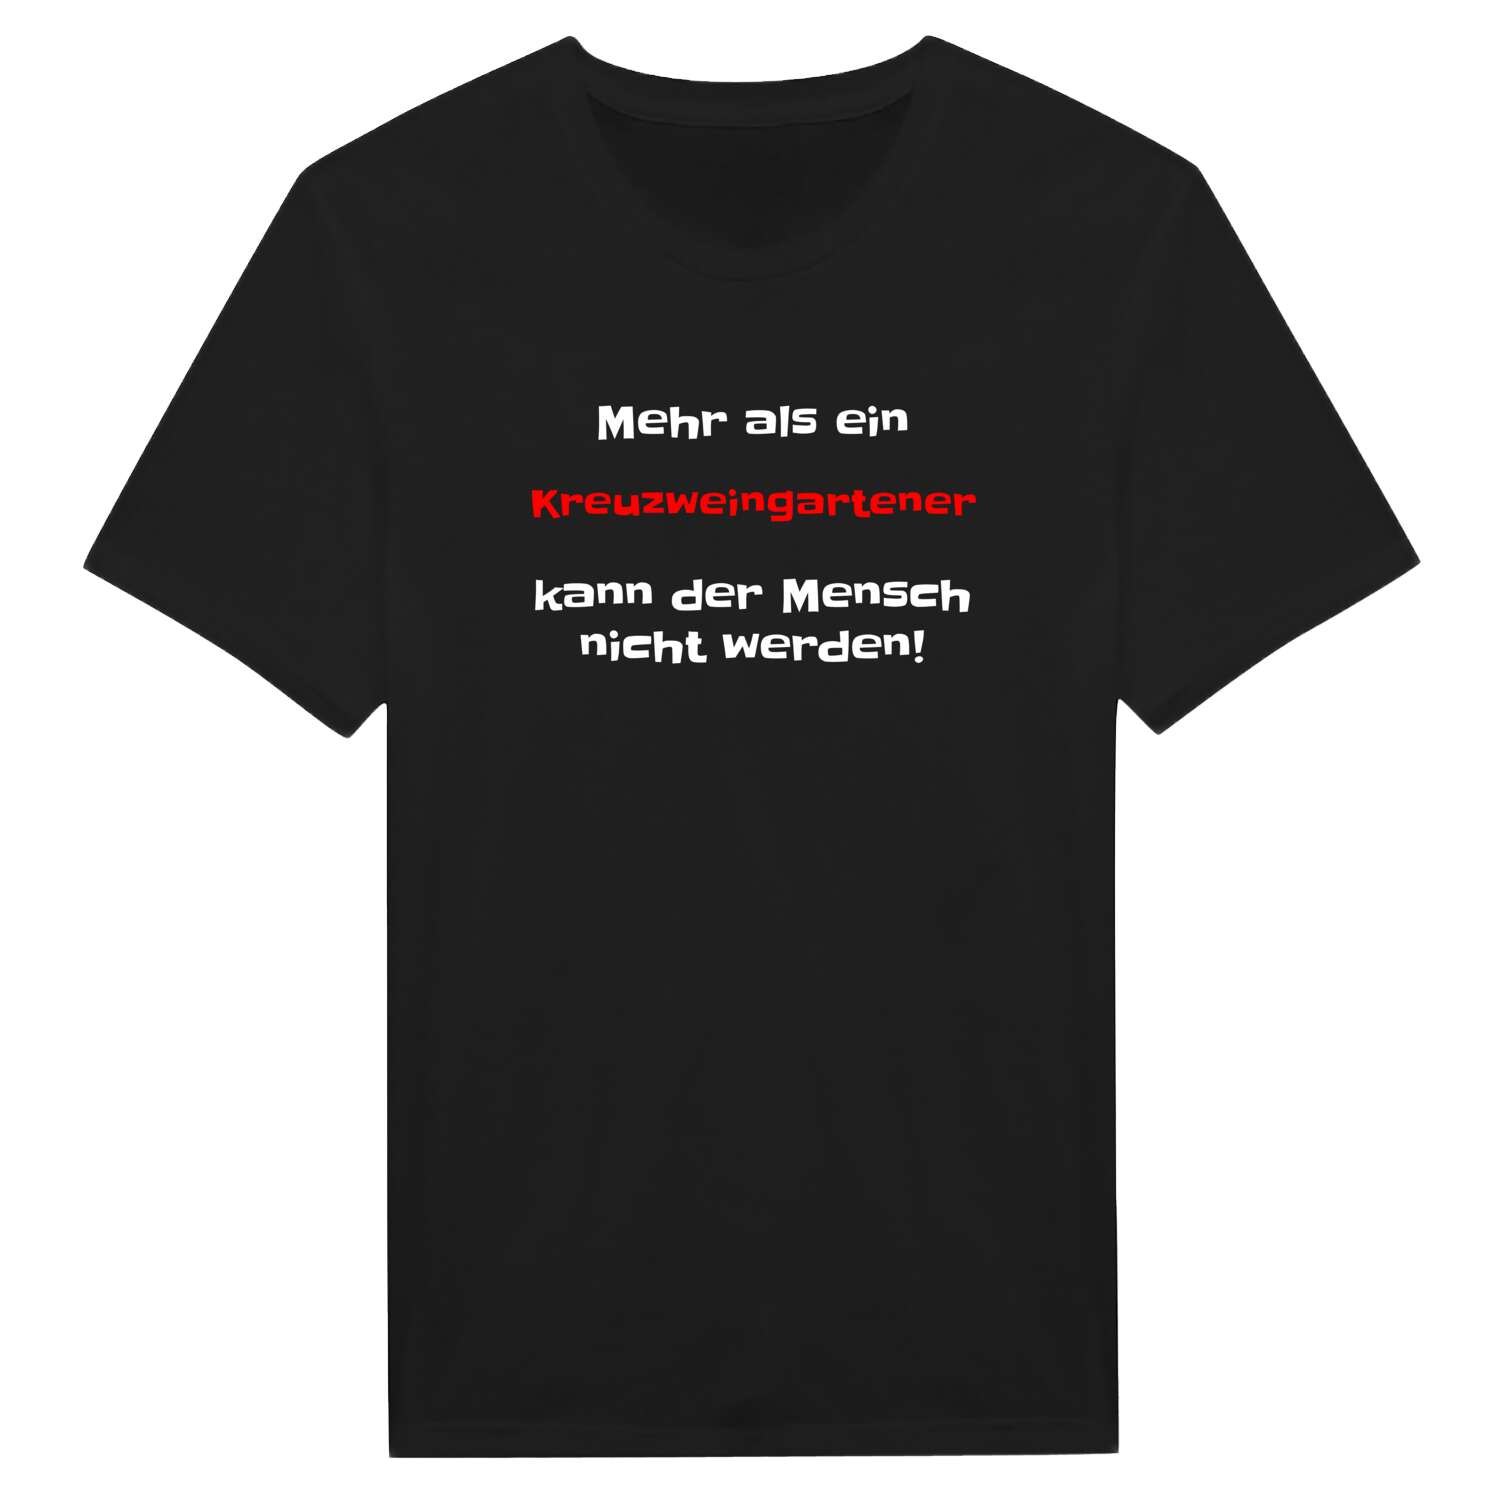 Kreuzweingarten T-Shirt »Mehr als ein«